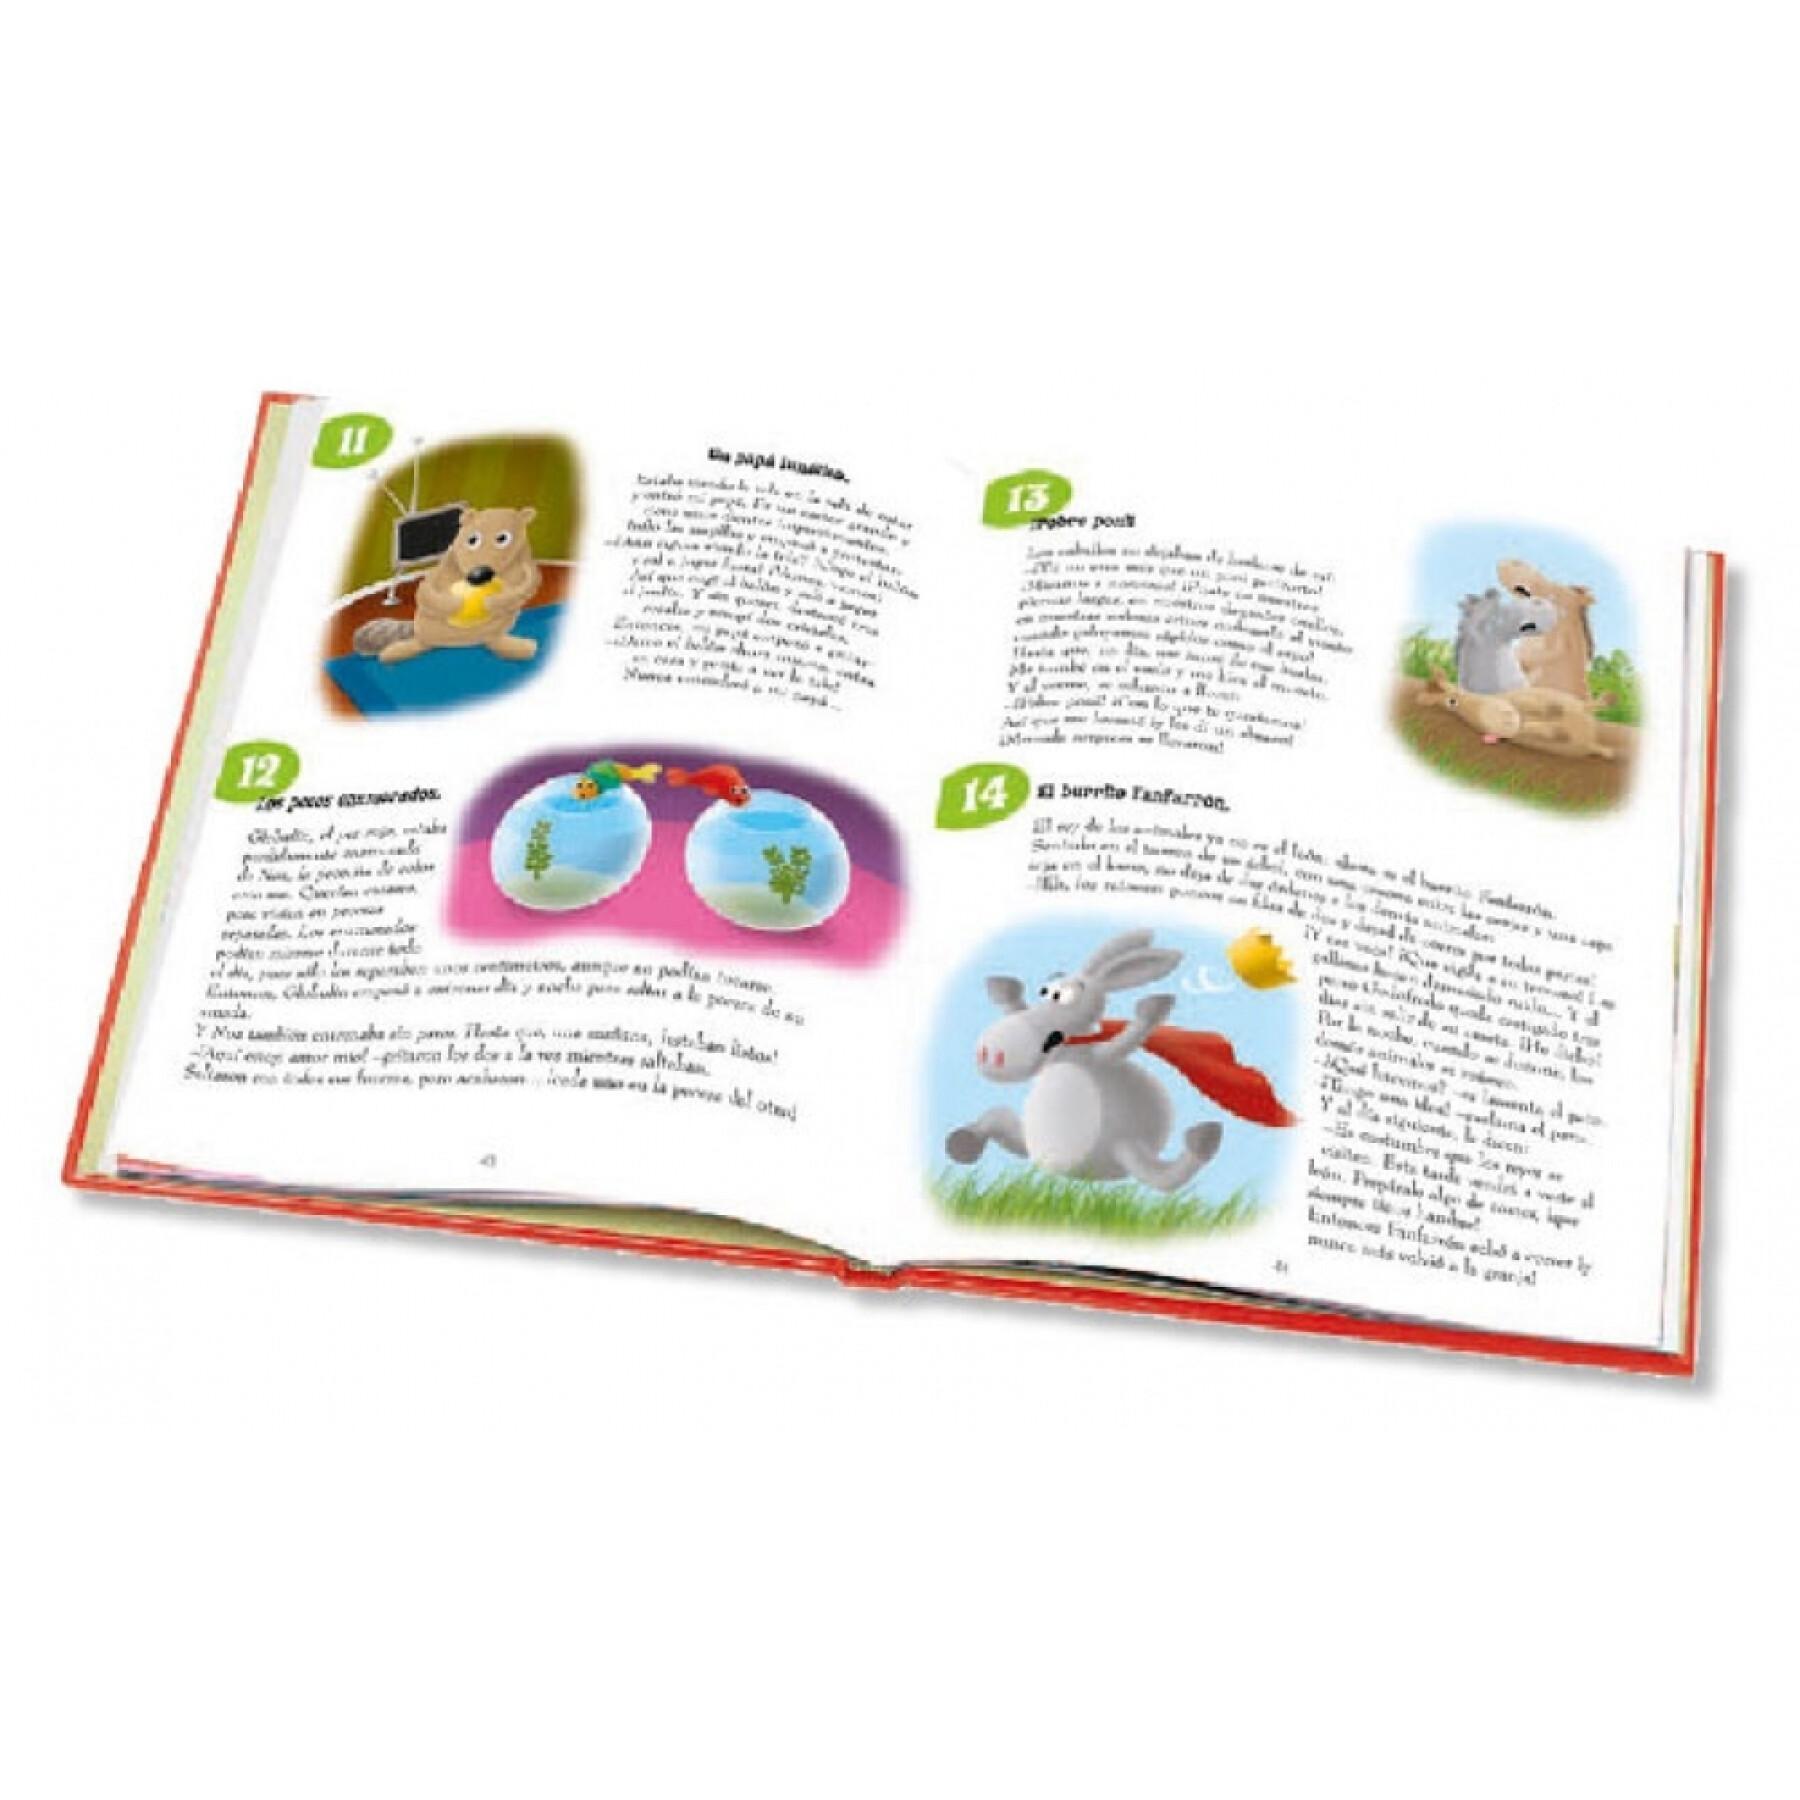 Boek voor baby's 365 verhaaltjes voor het slapen gaan Ediciones Saldaña